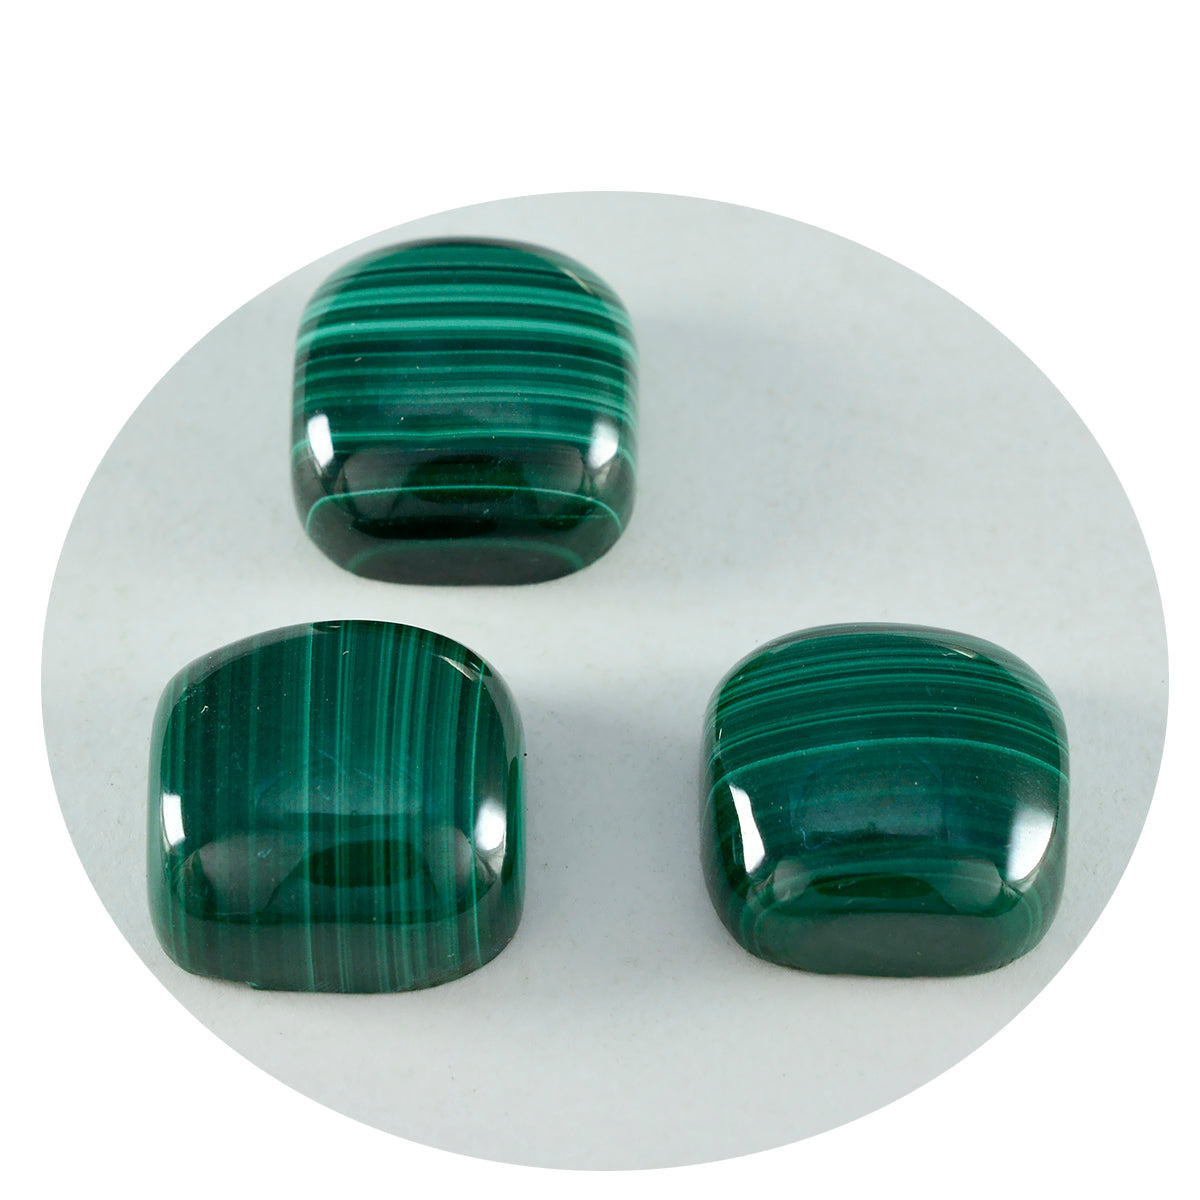 Riyogems 1 pieza cabujón de malaquita verde 12x12 mm forma de cojín Linda gema de calidad